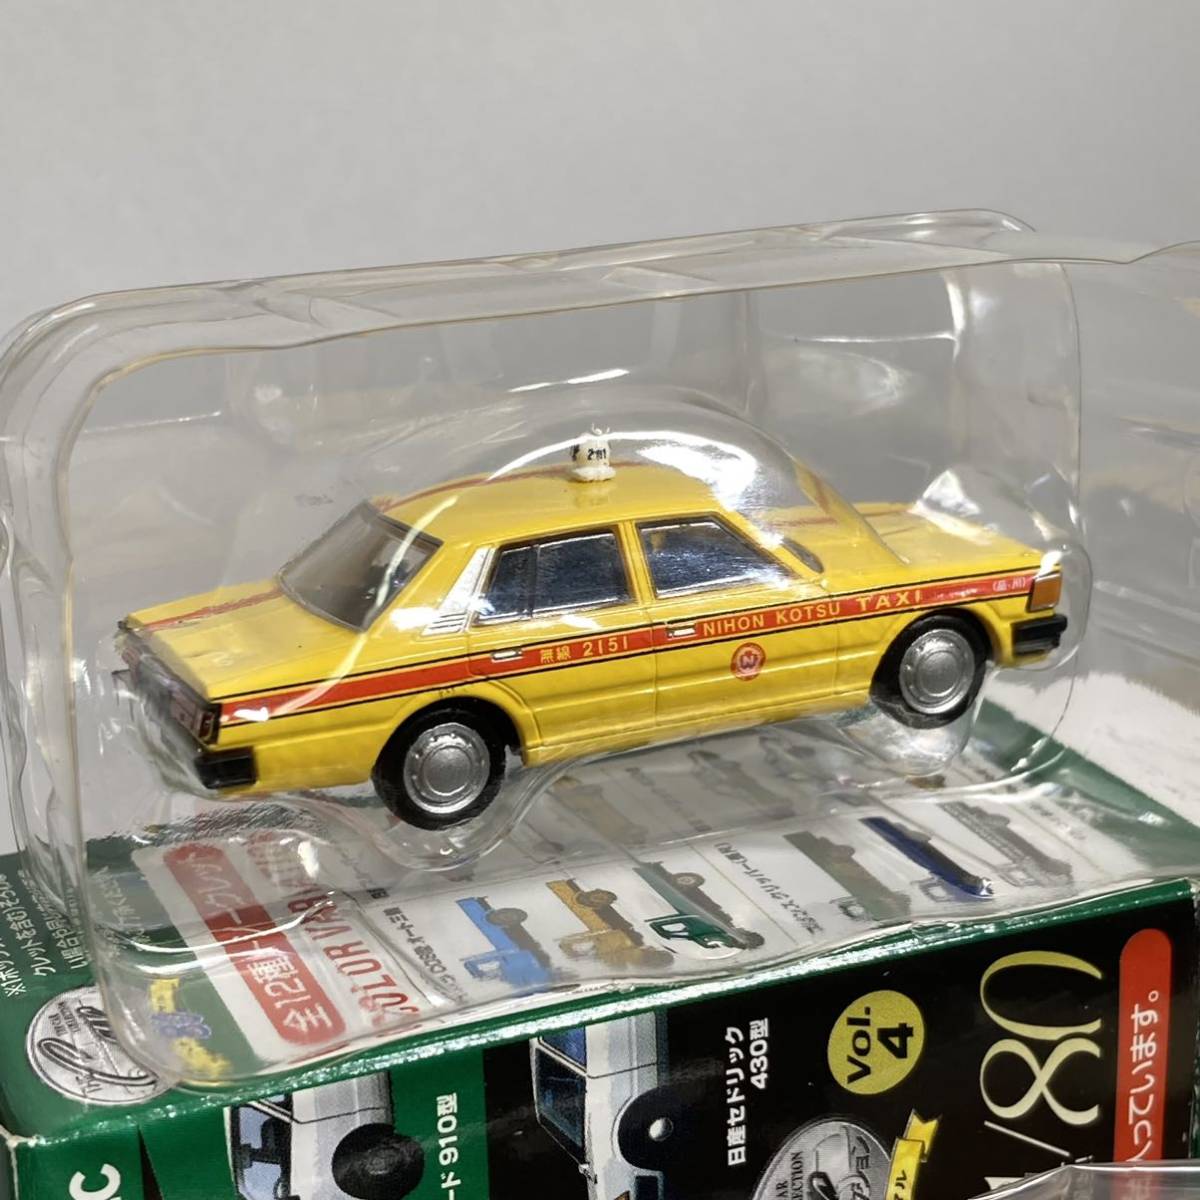 日産 セドリック 430型 スタンダード タクシー 黄色 カーコレクション80 vol.6 1/80スケール トミーテック TOMYTEC NISSAN CEDRIC_画像2